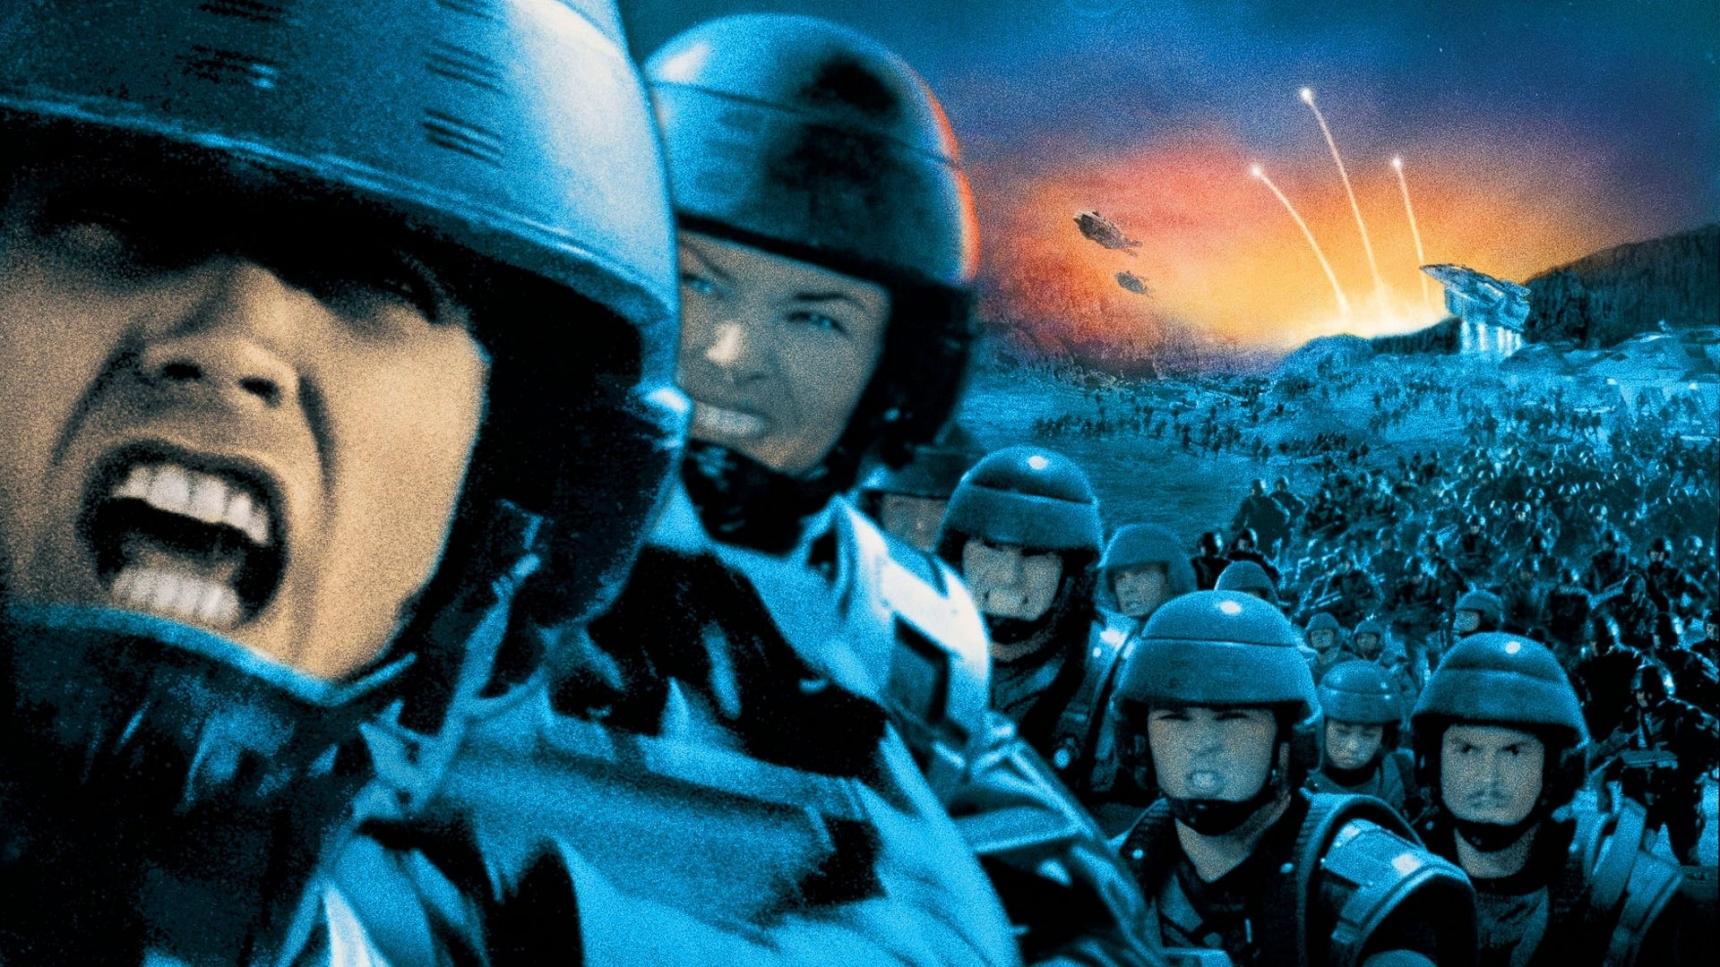 Fondo de pantalla de la película Starship Troopers (Las brigadas del espacio) en Cliver.tv gratis